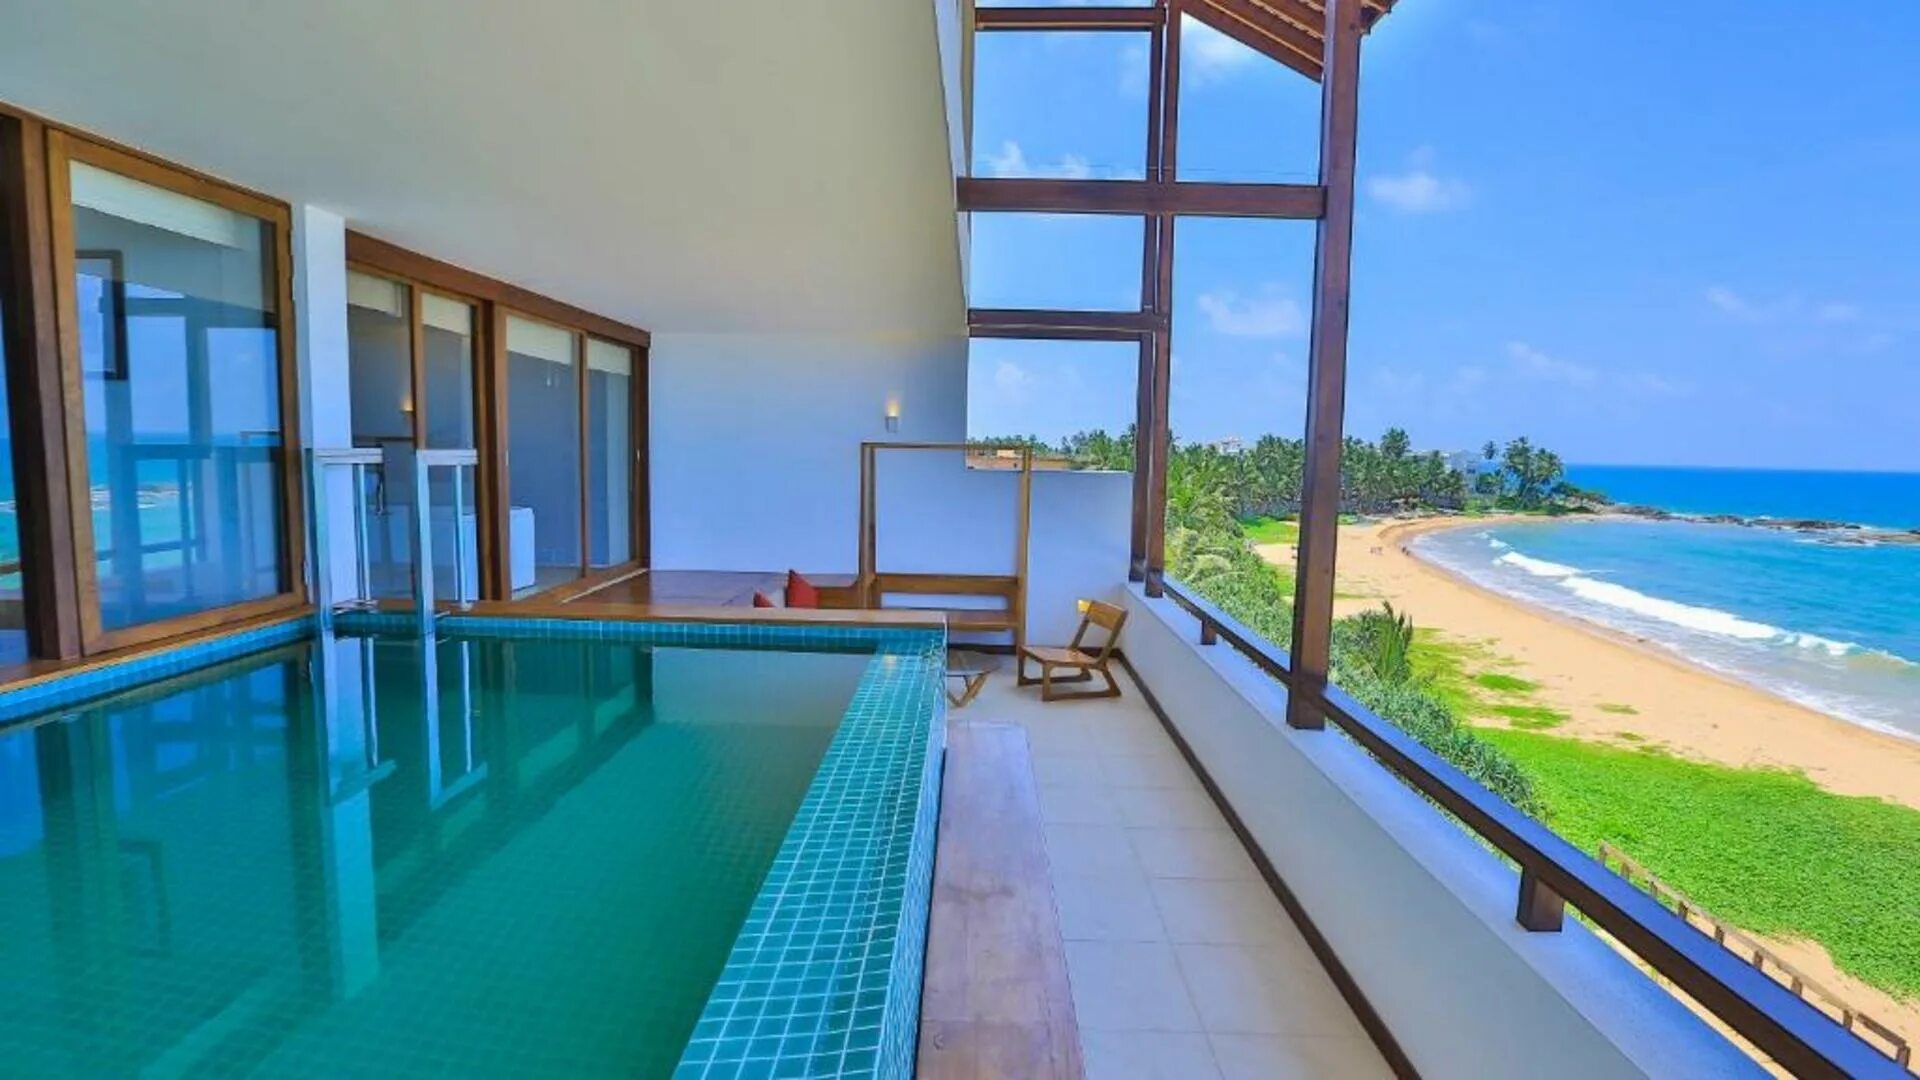 Pandanus Beach Resort. Temple Tree Resort Spa 4 Шри-Ланка. Pandanus Beach Resort Spa 4 Шри-Ланка. Индурува Шри Ланка. Beach resort 4 шри ланка